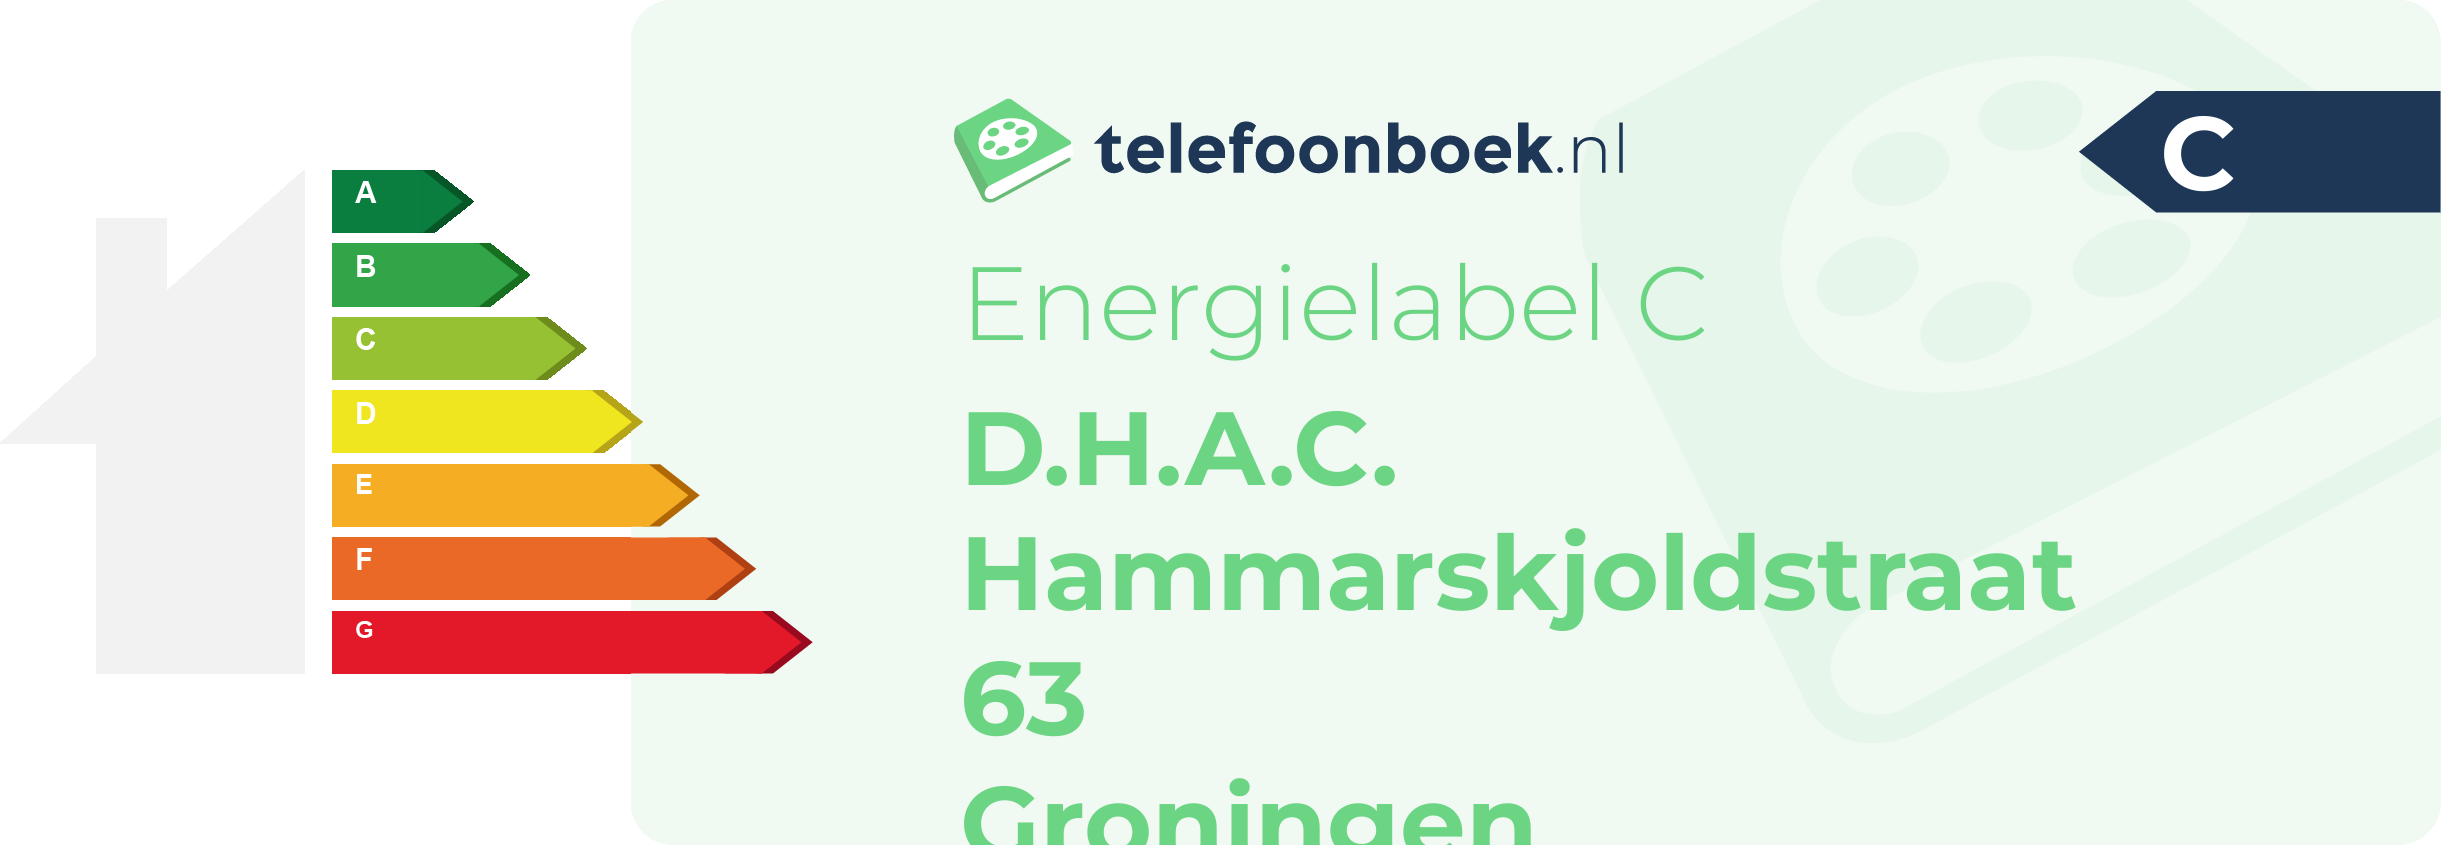 Energielabel D.H.A.C. Hammarskjoldstraat 63 Groningen